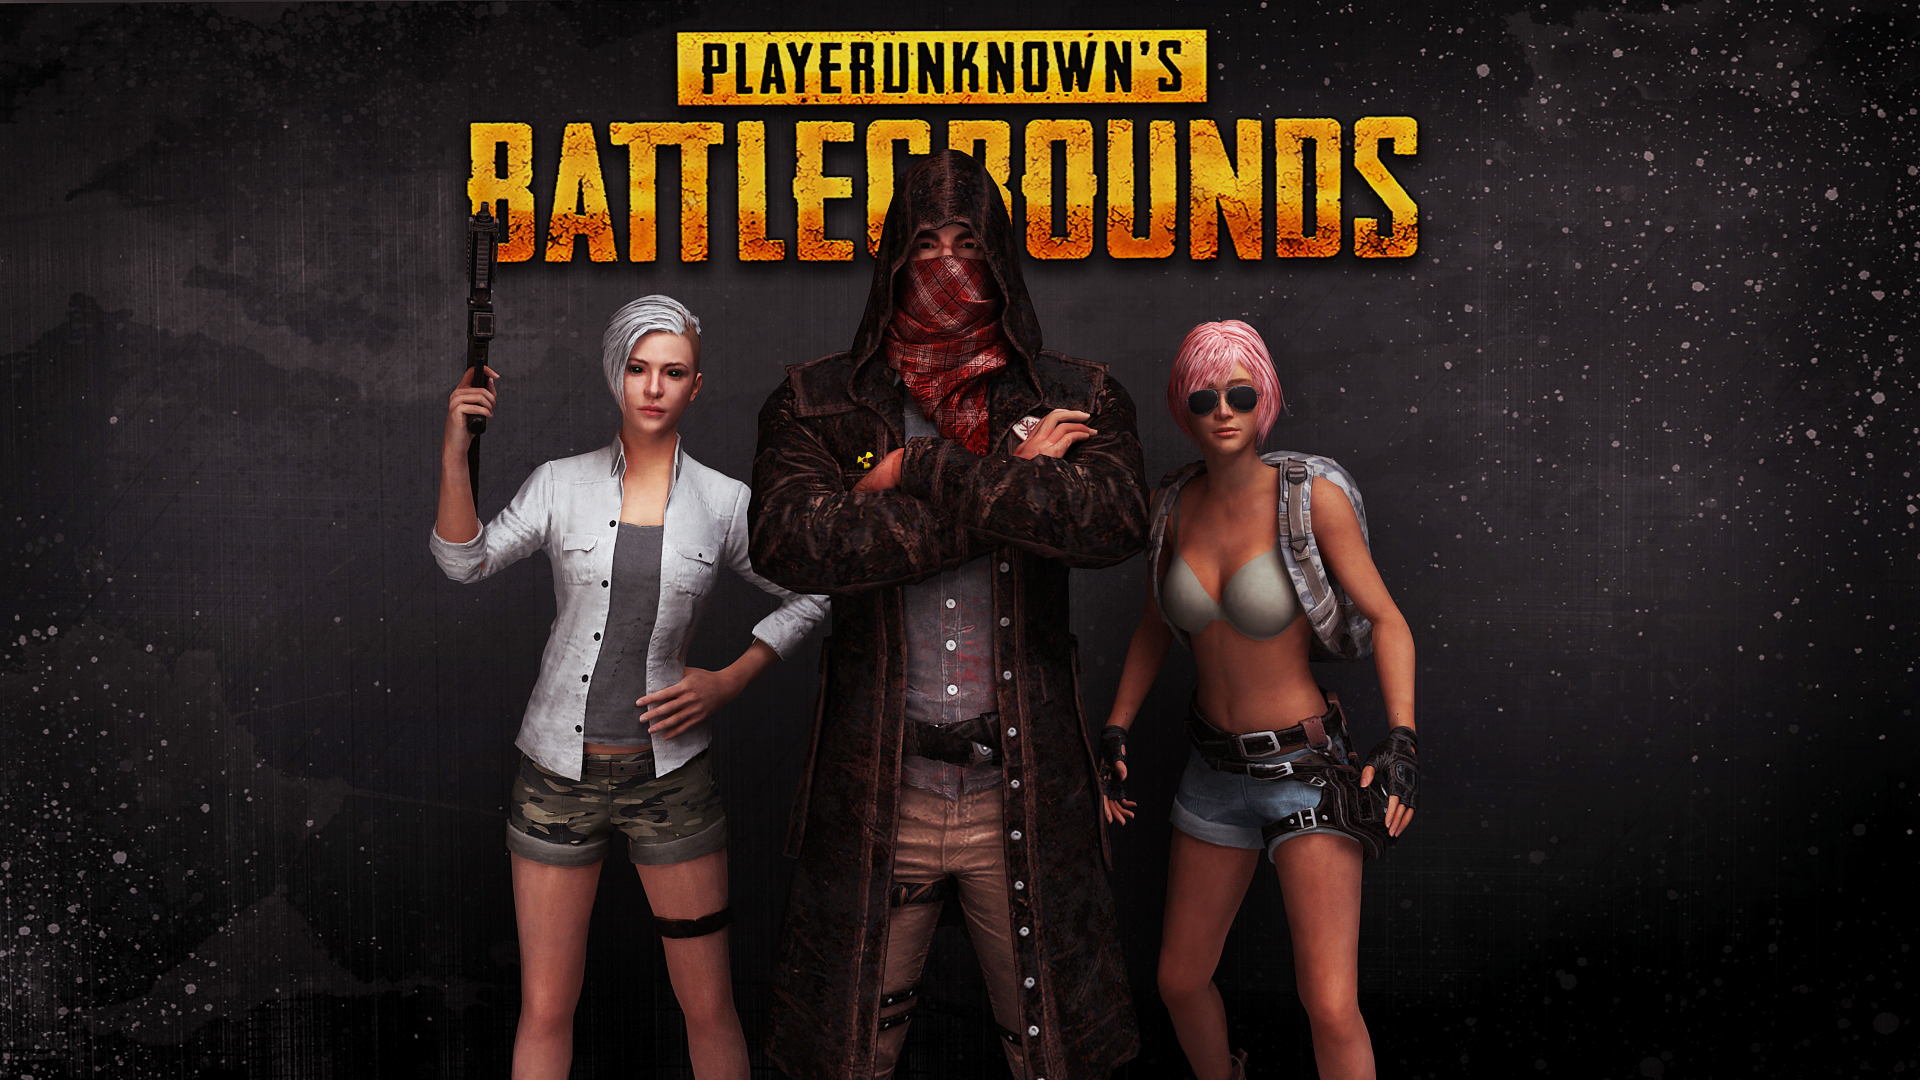 Handy-Wallpaper Computerspiele, Playerunknown's Battlegrounds kostenlos herunterladen.